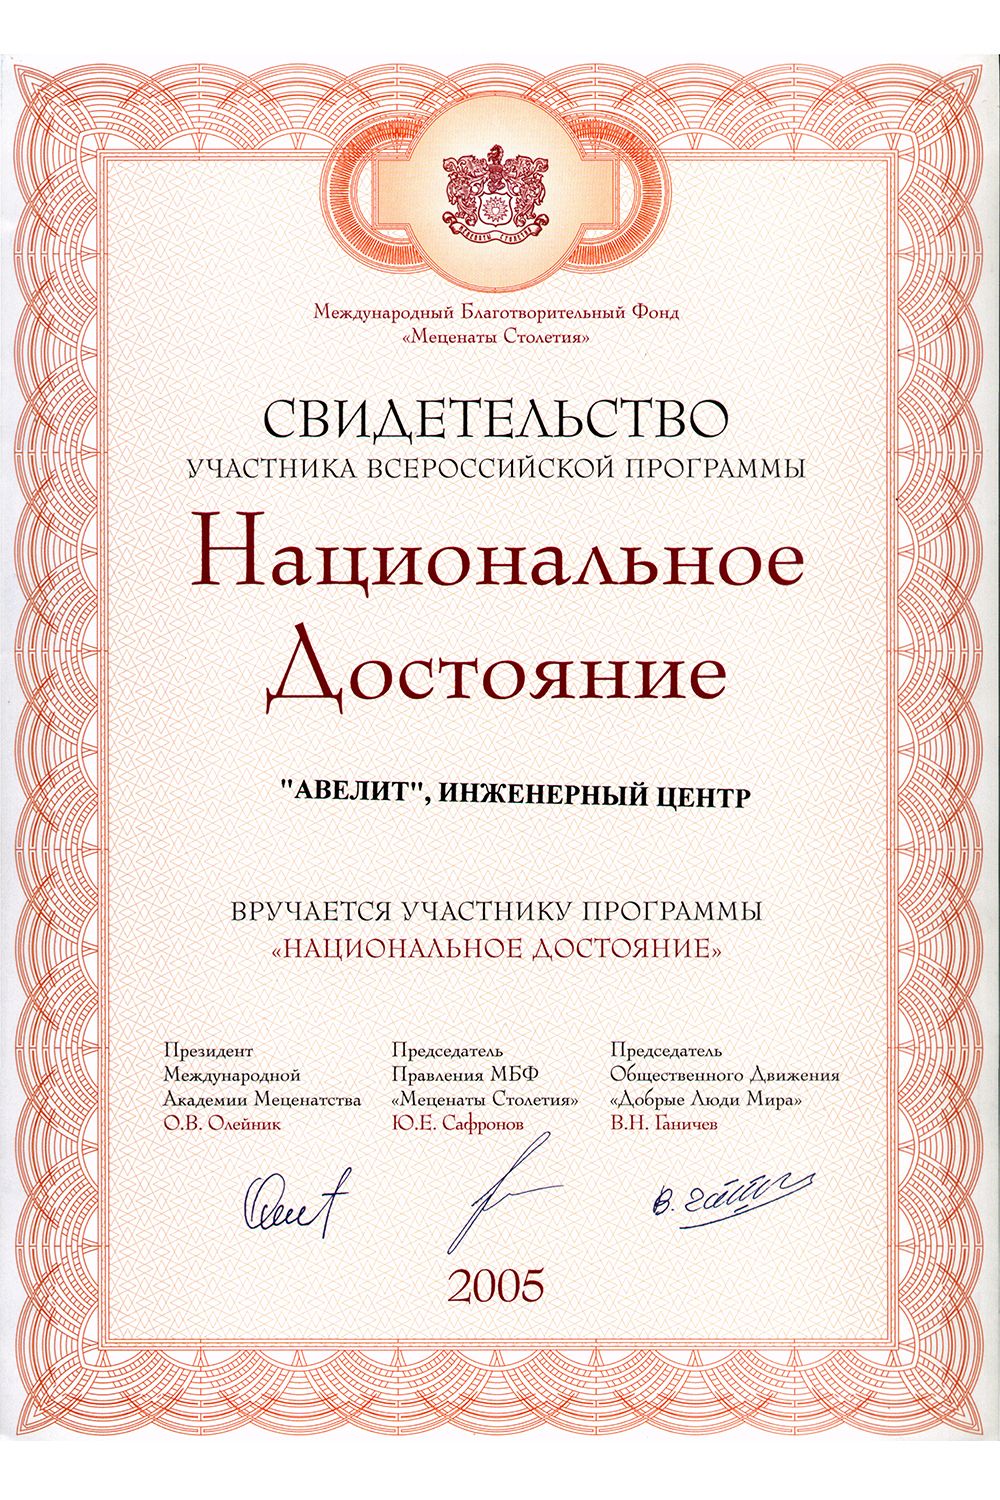 Фонд меценат. Сертификат на благотворительность. Благотворительный сертификат. Международный благотворительный фонд меценаты столетия. Фото сертификатов по строительству бань.